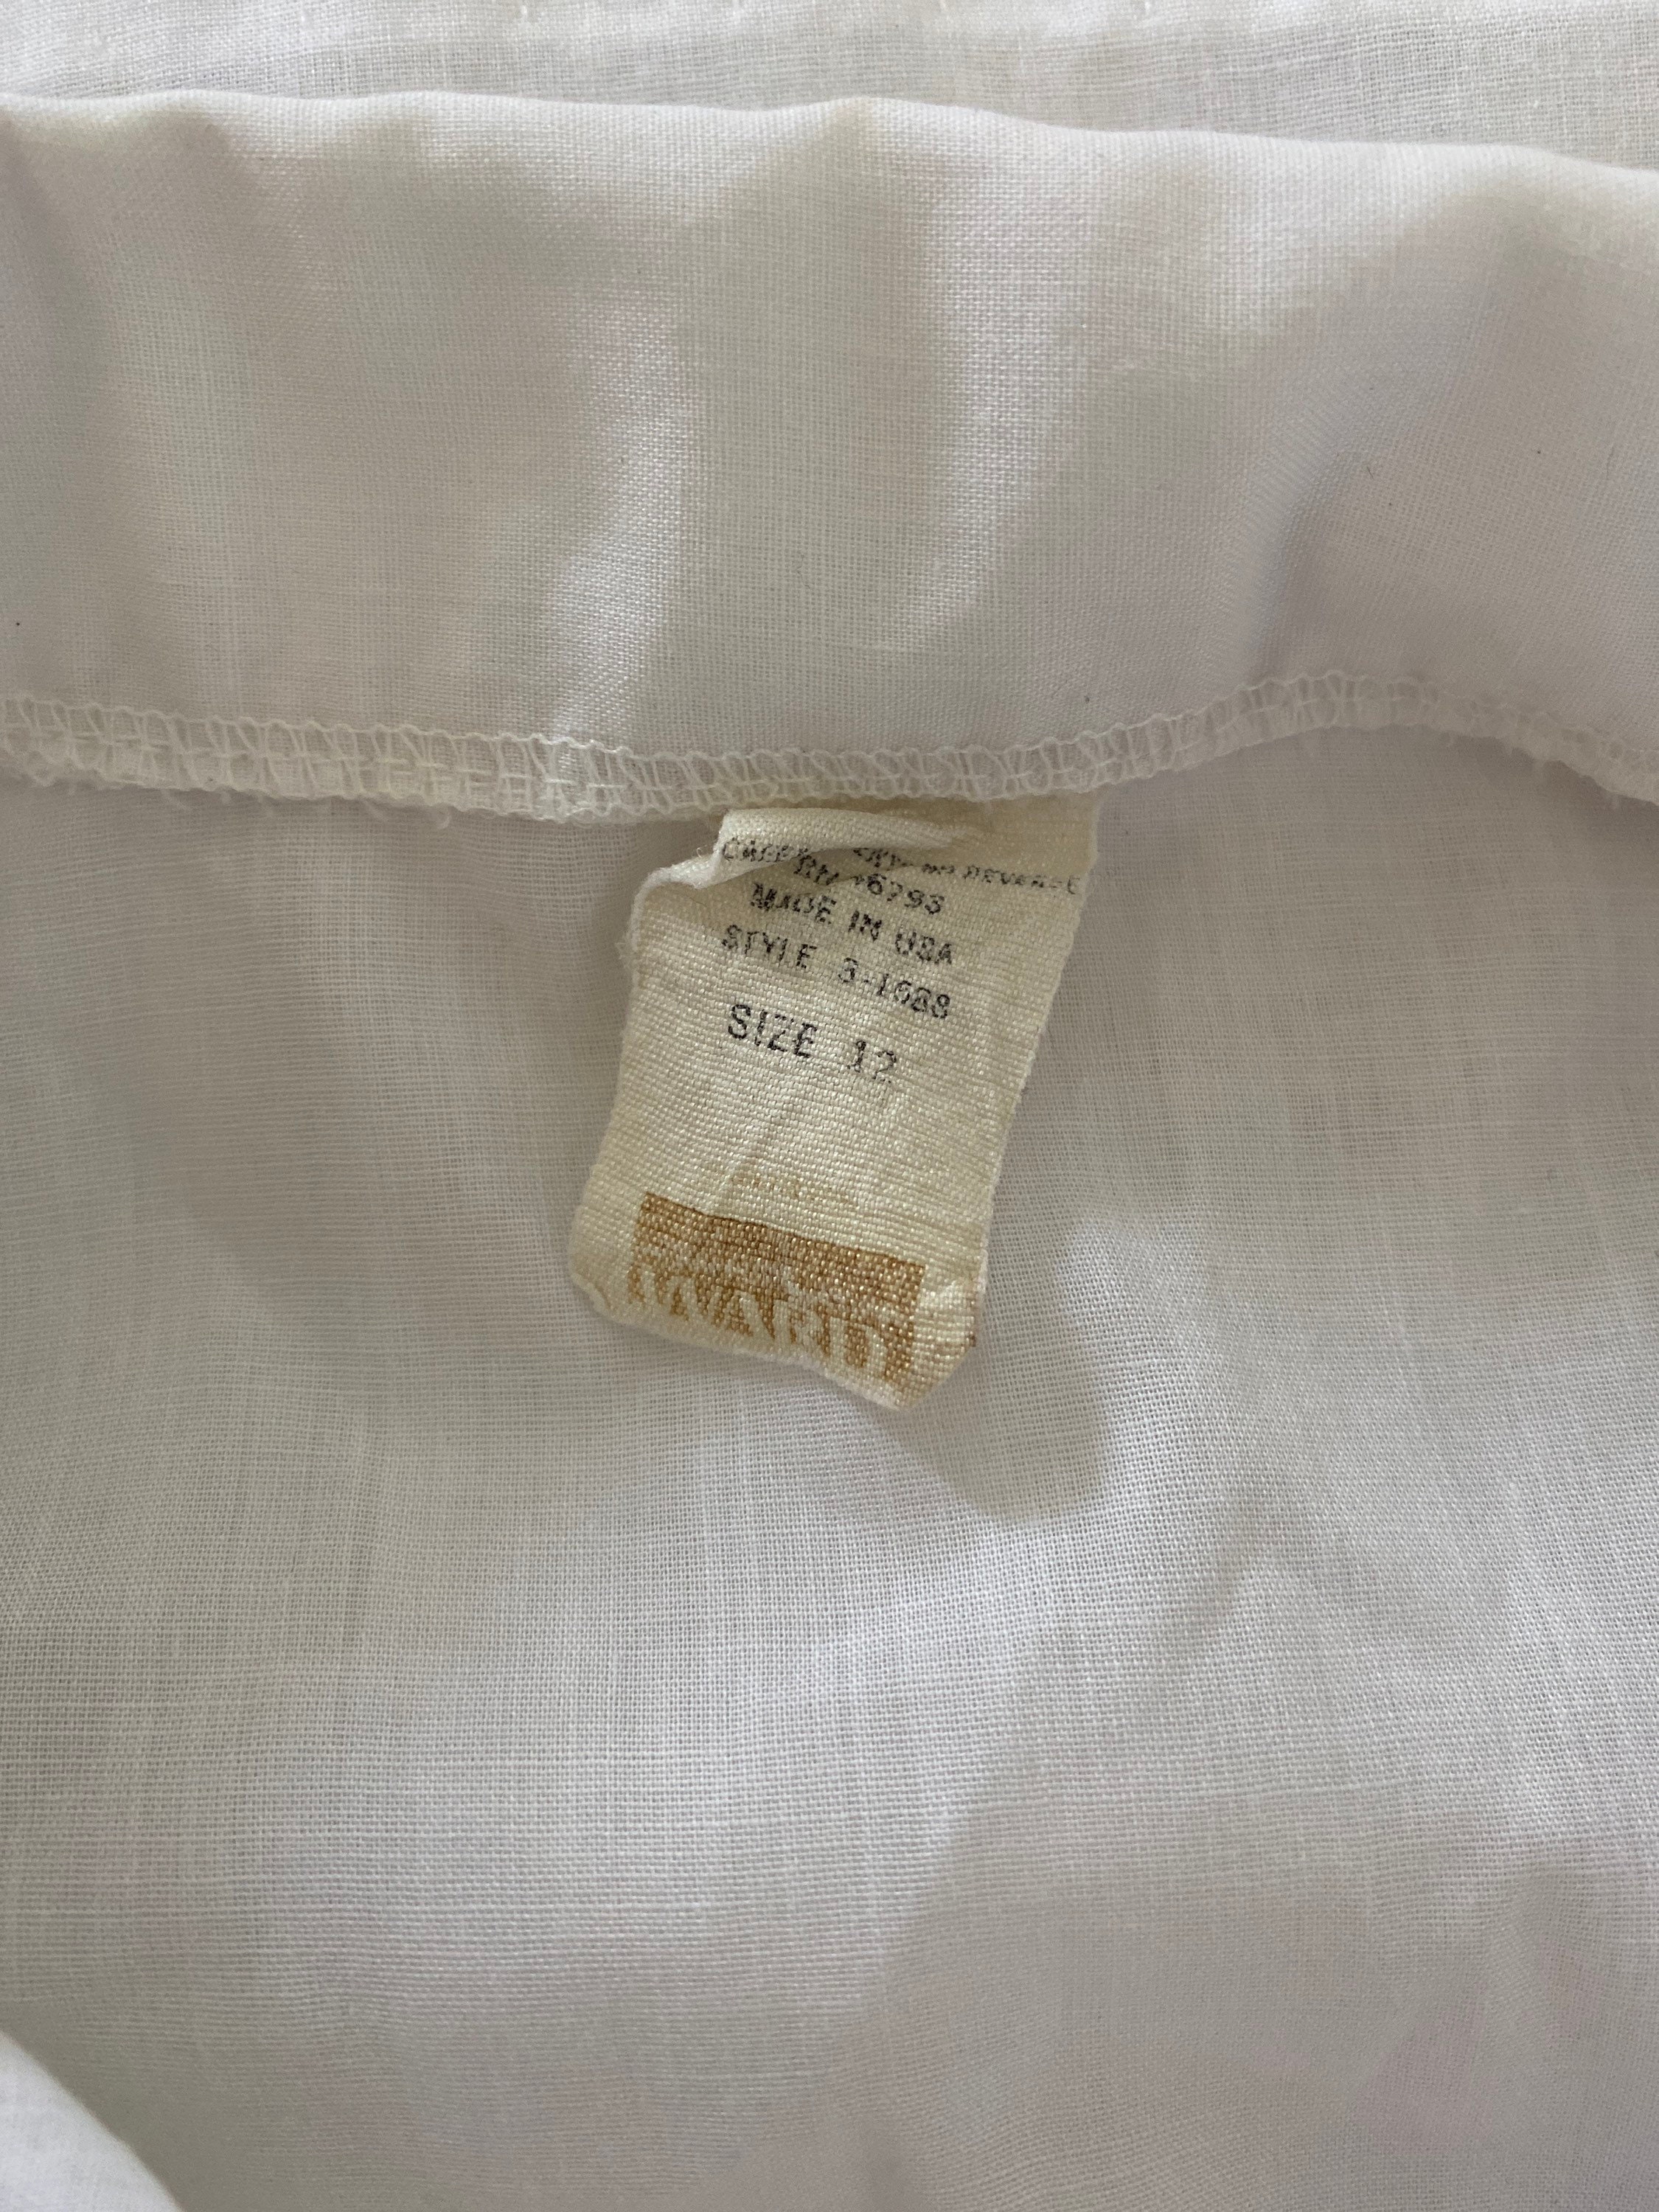 70s large white cotton tuxedo shirt short sleeve front ruffle | Etsy